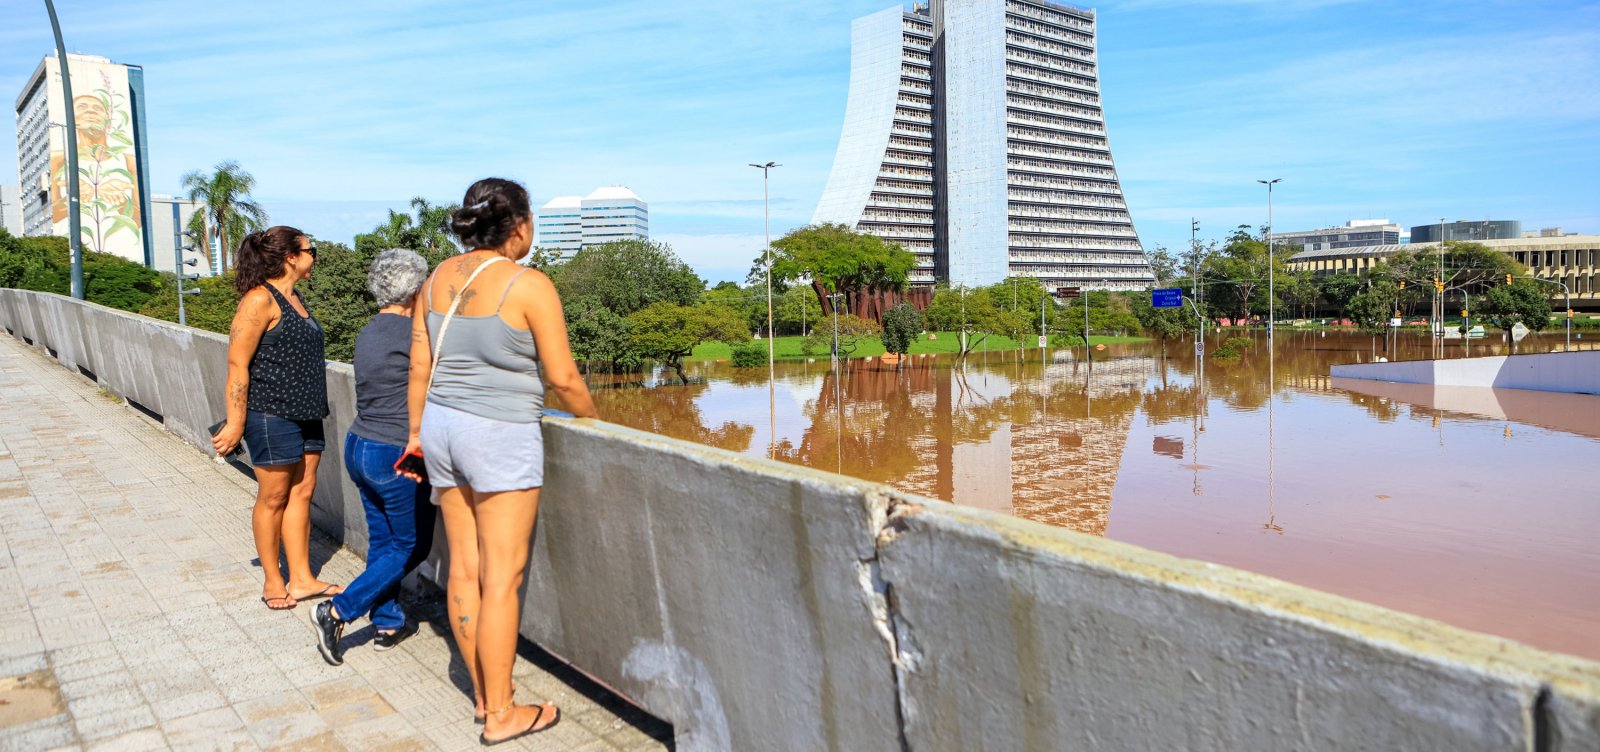 Após casos de abuso, Porto Alegre recebe abrigo exclusivo para mulheres e crianças